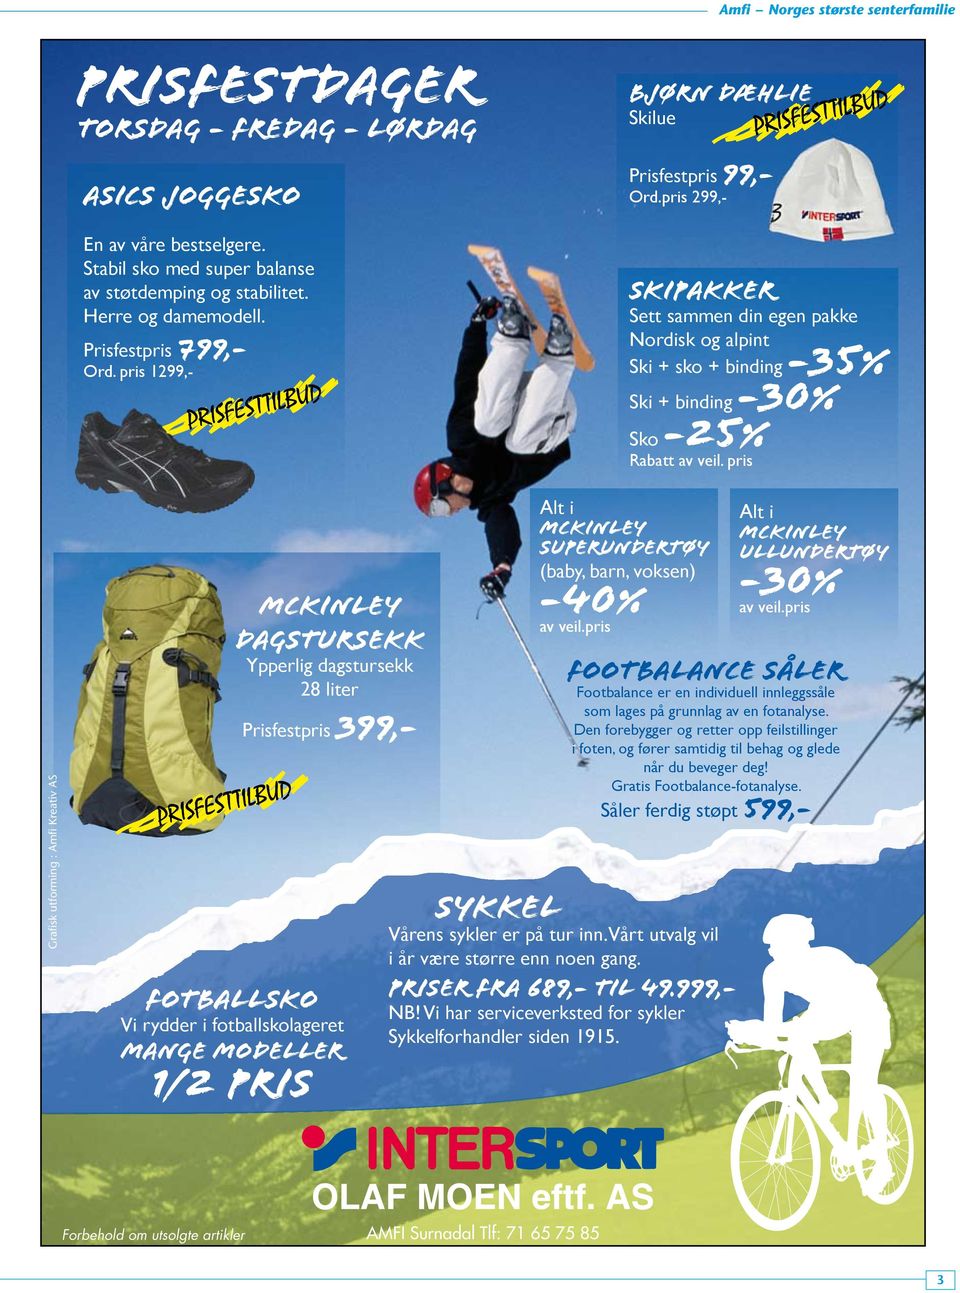 pris 299,- SKIPAKKER Sett sammen din egen pakke Nordisk og alpint Ski + sko + binding -35% Ski + binding Sko -25% Rabatt av veil.